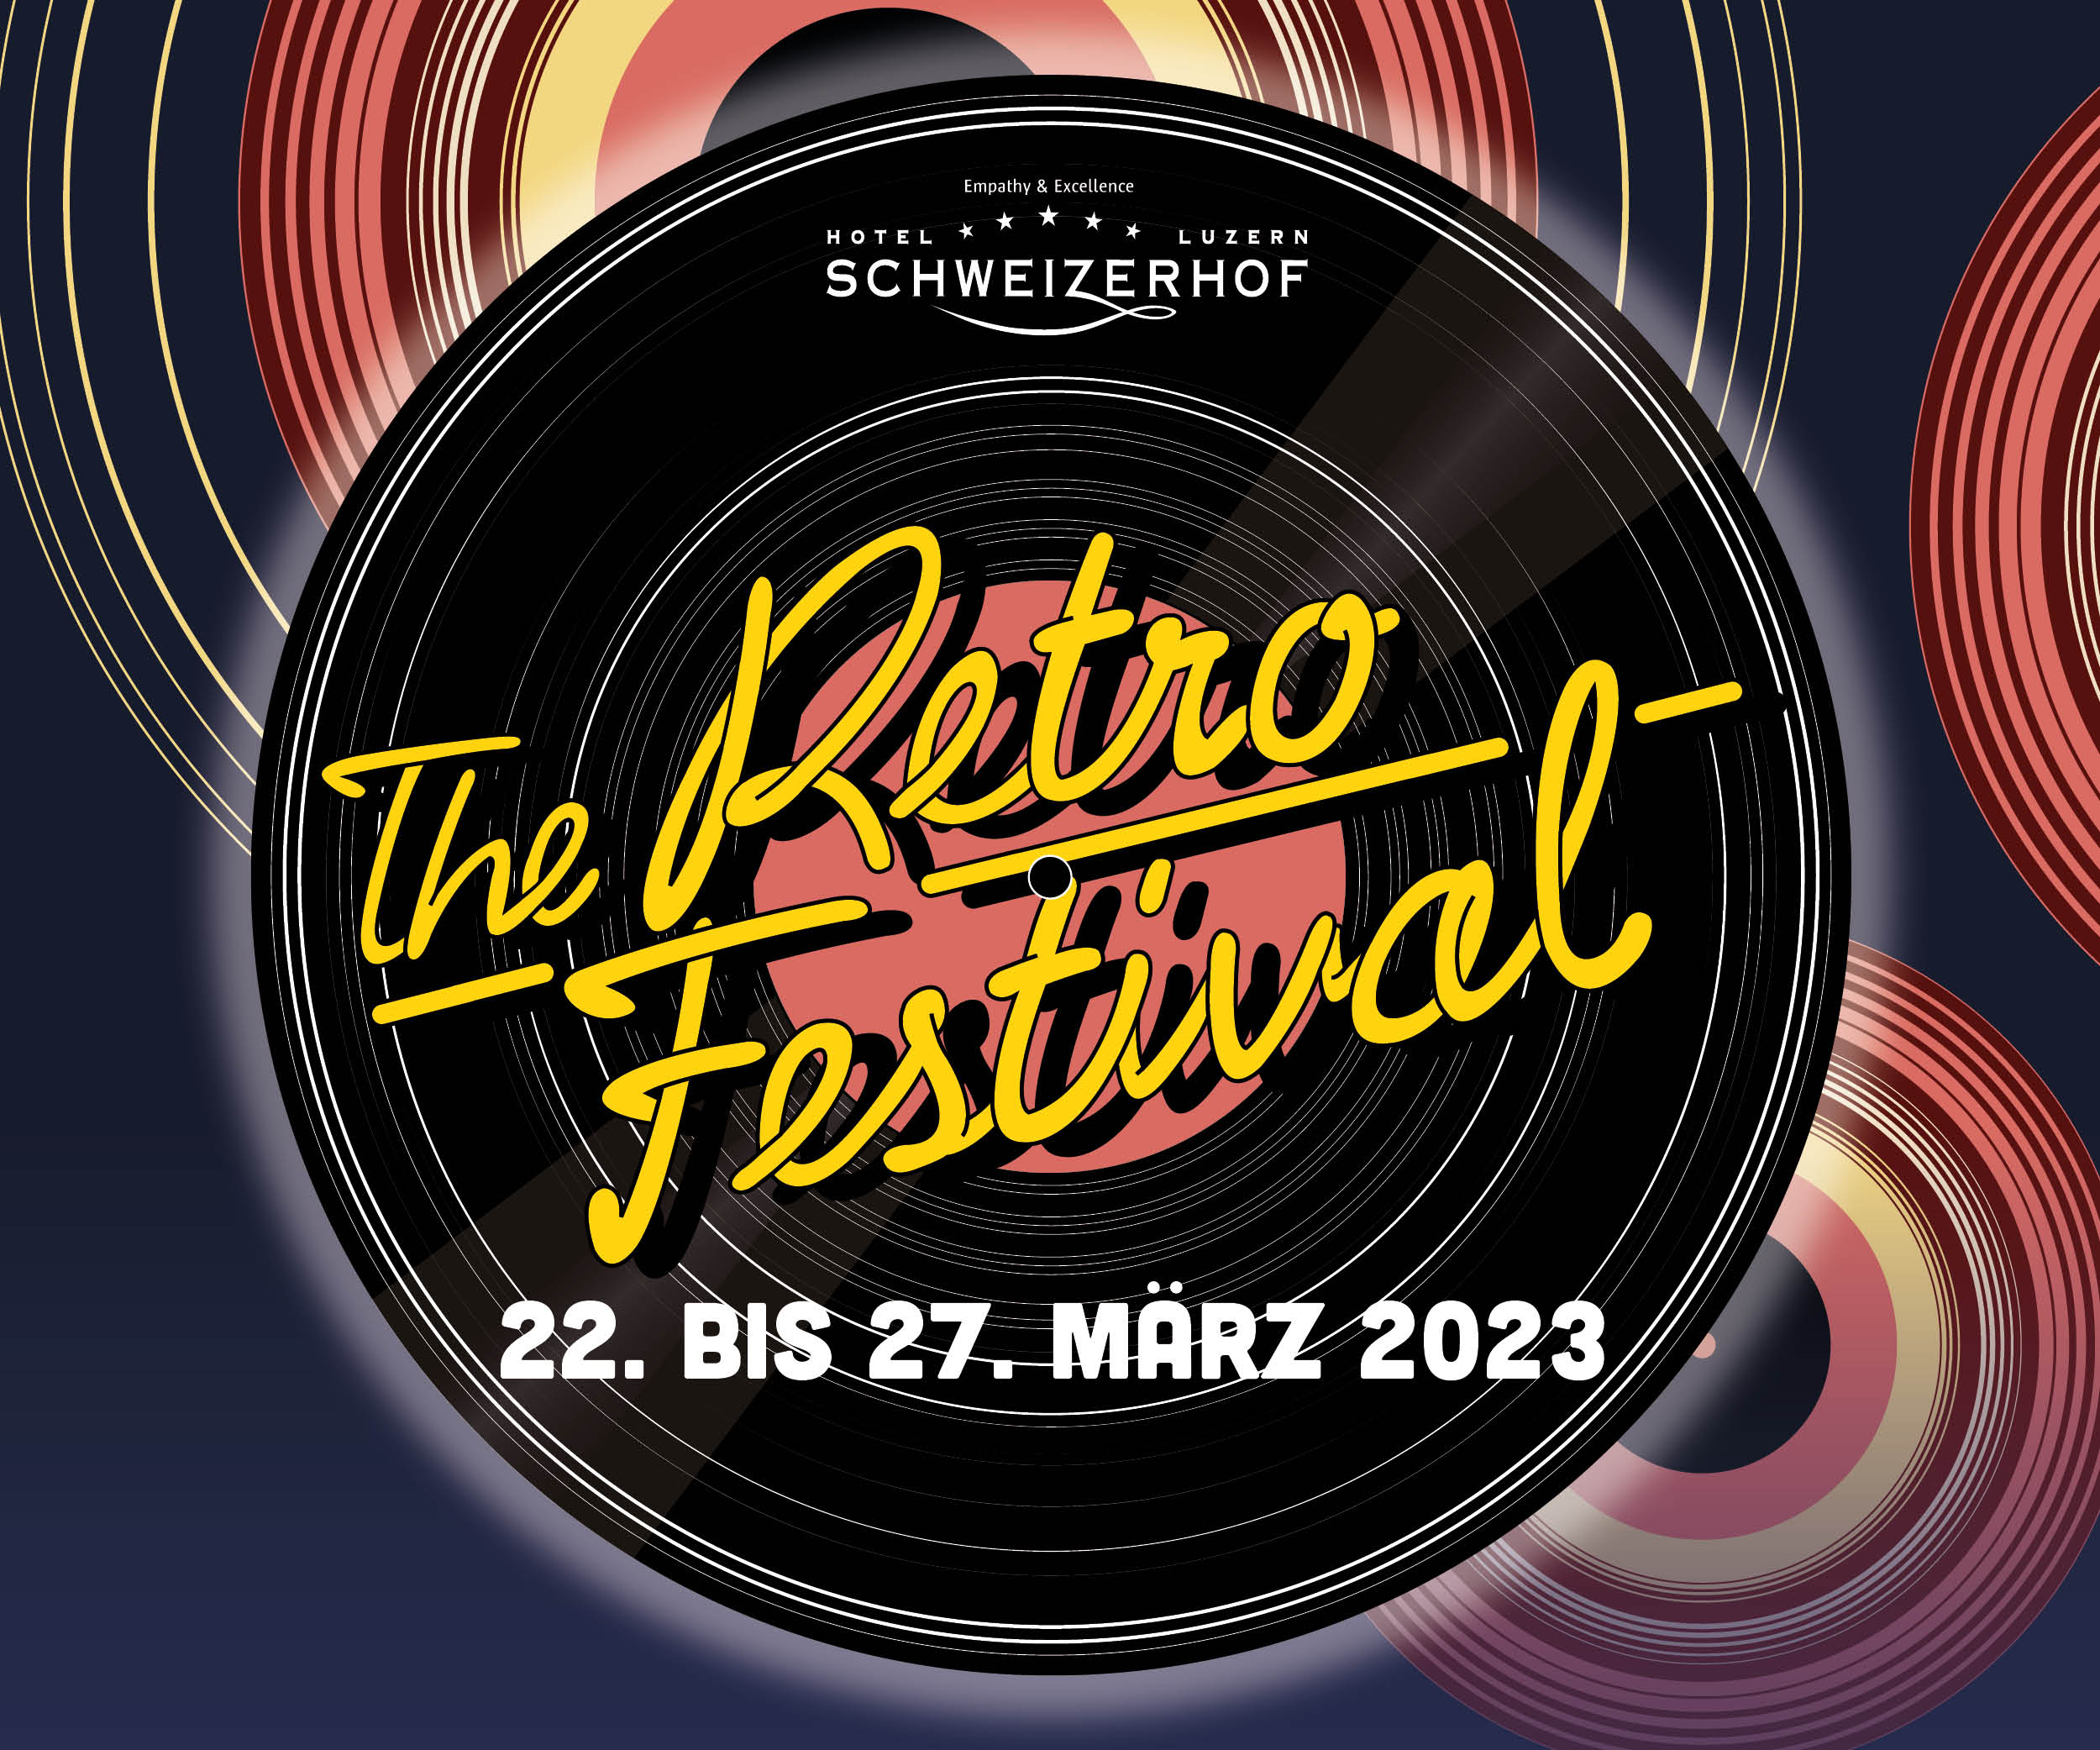 The Retro Festival 2023 - Festivalpass